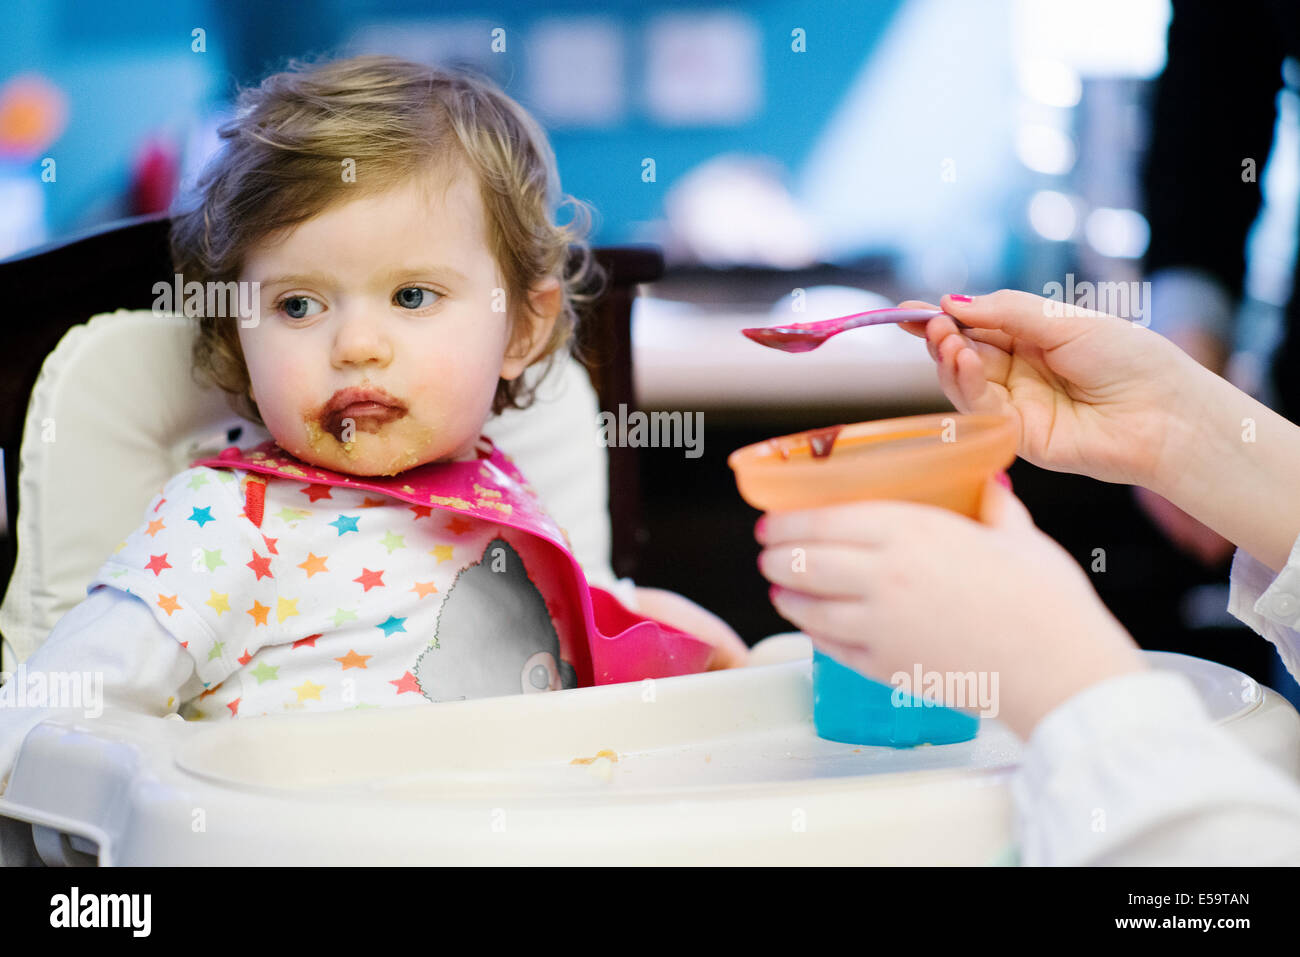 Alimentazione ragazza bambina in sedia alta Foto Stock